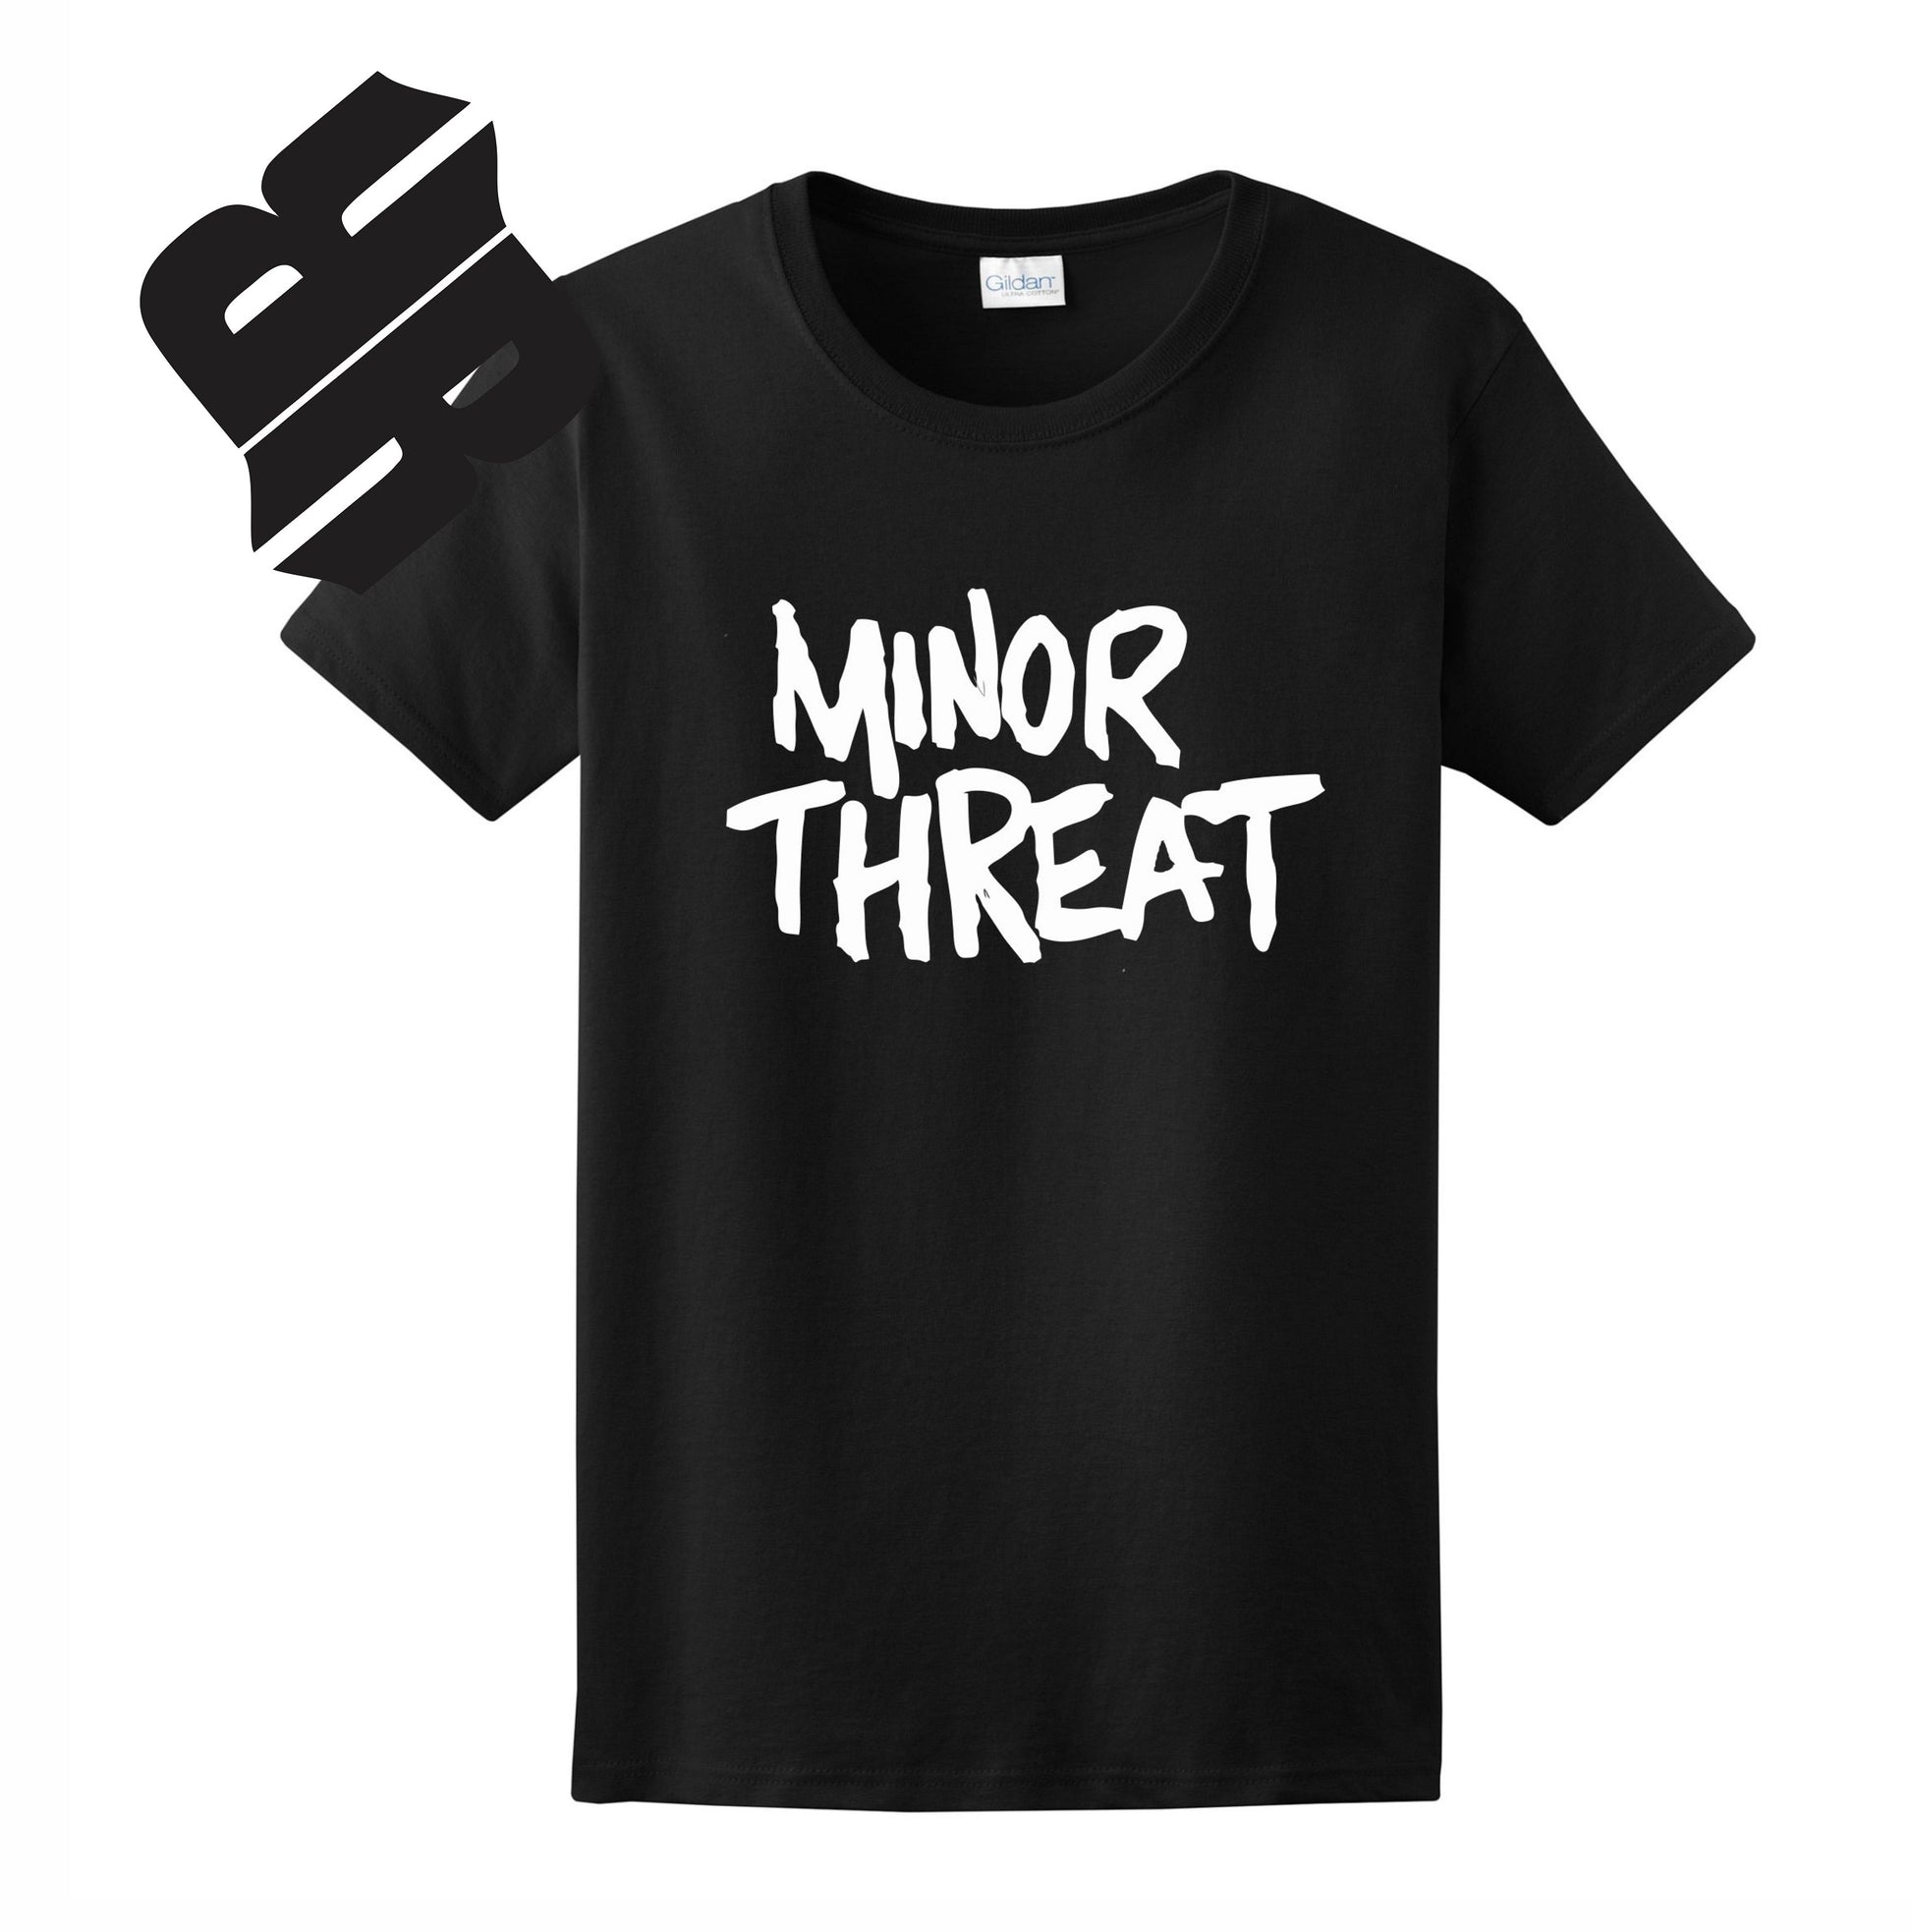 Radical Band  Men's Shirts - Minor Threat (Black) - MYSTYLEMYCLOTHING